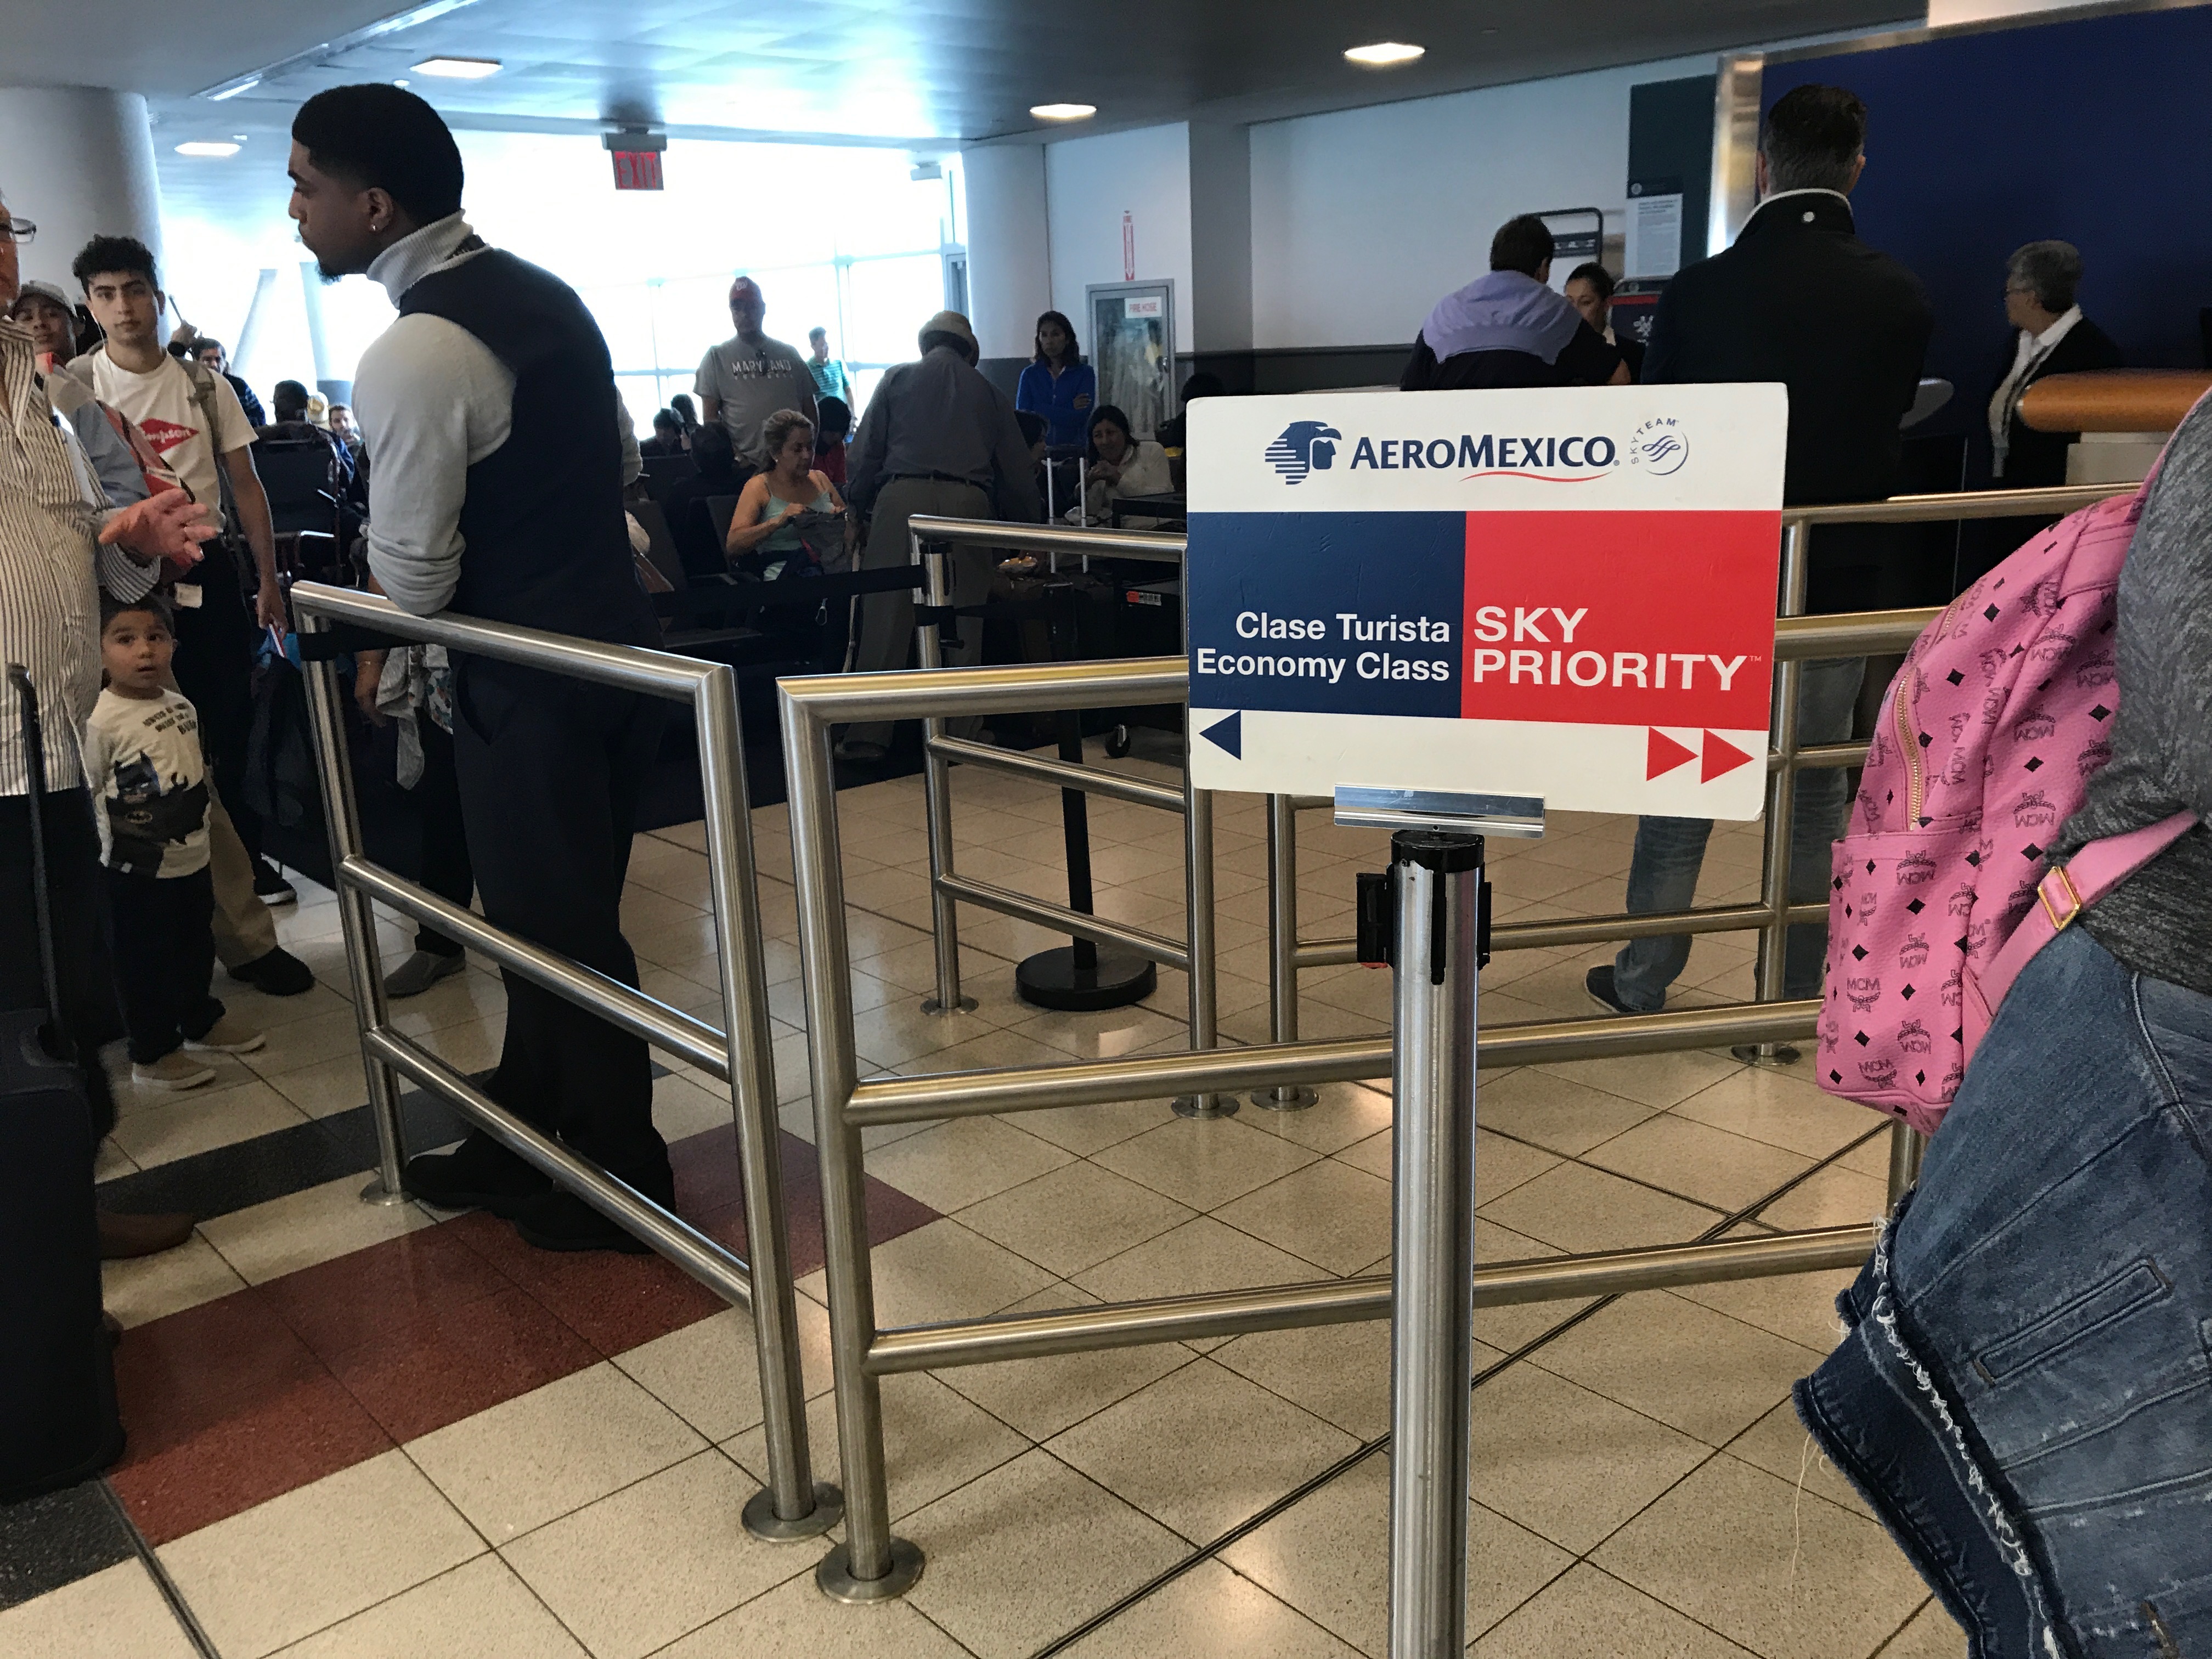 Aeromexico JFK-MEX Boarding at JFK